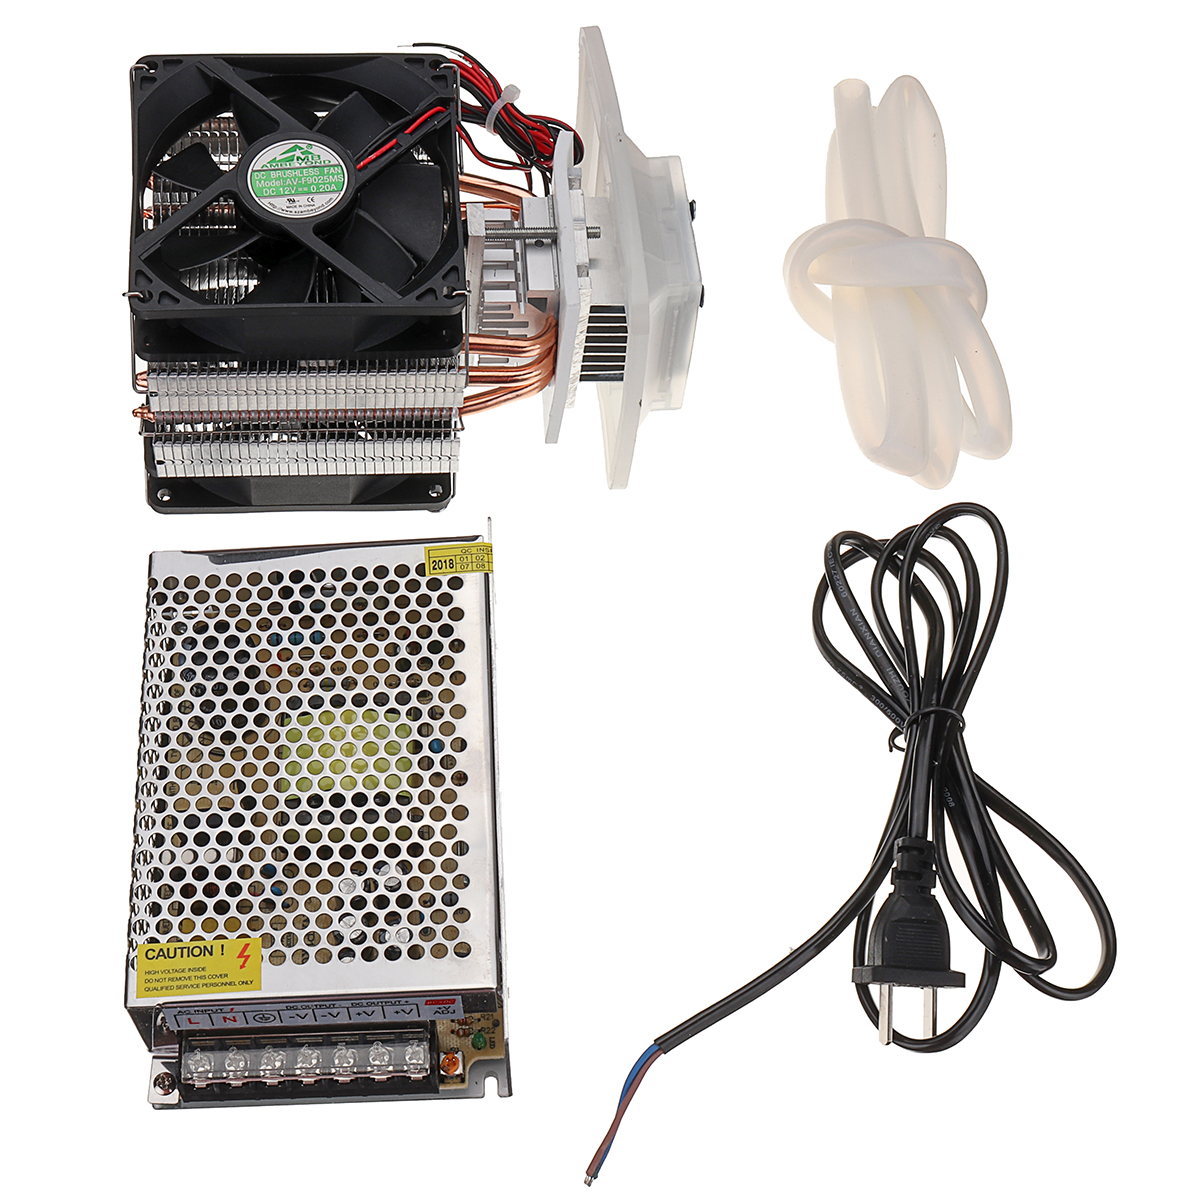 

DIY CPU Cooling Fan Master Термоэлектрическая охлаждающая система охлаждения Пельтье Набор с поставкой